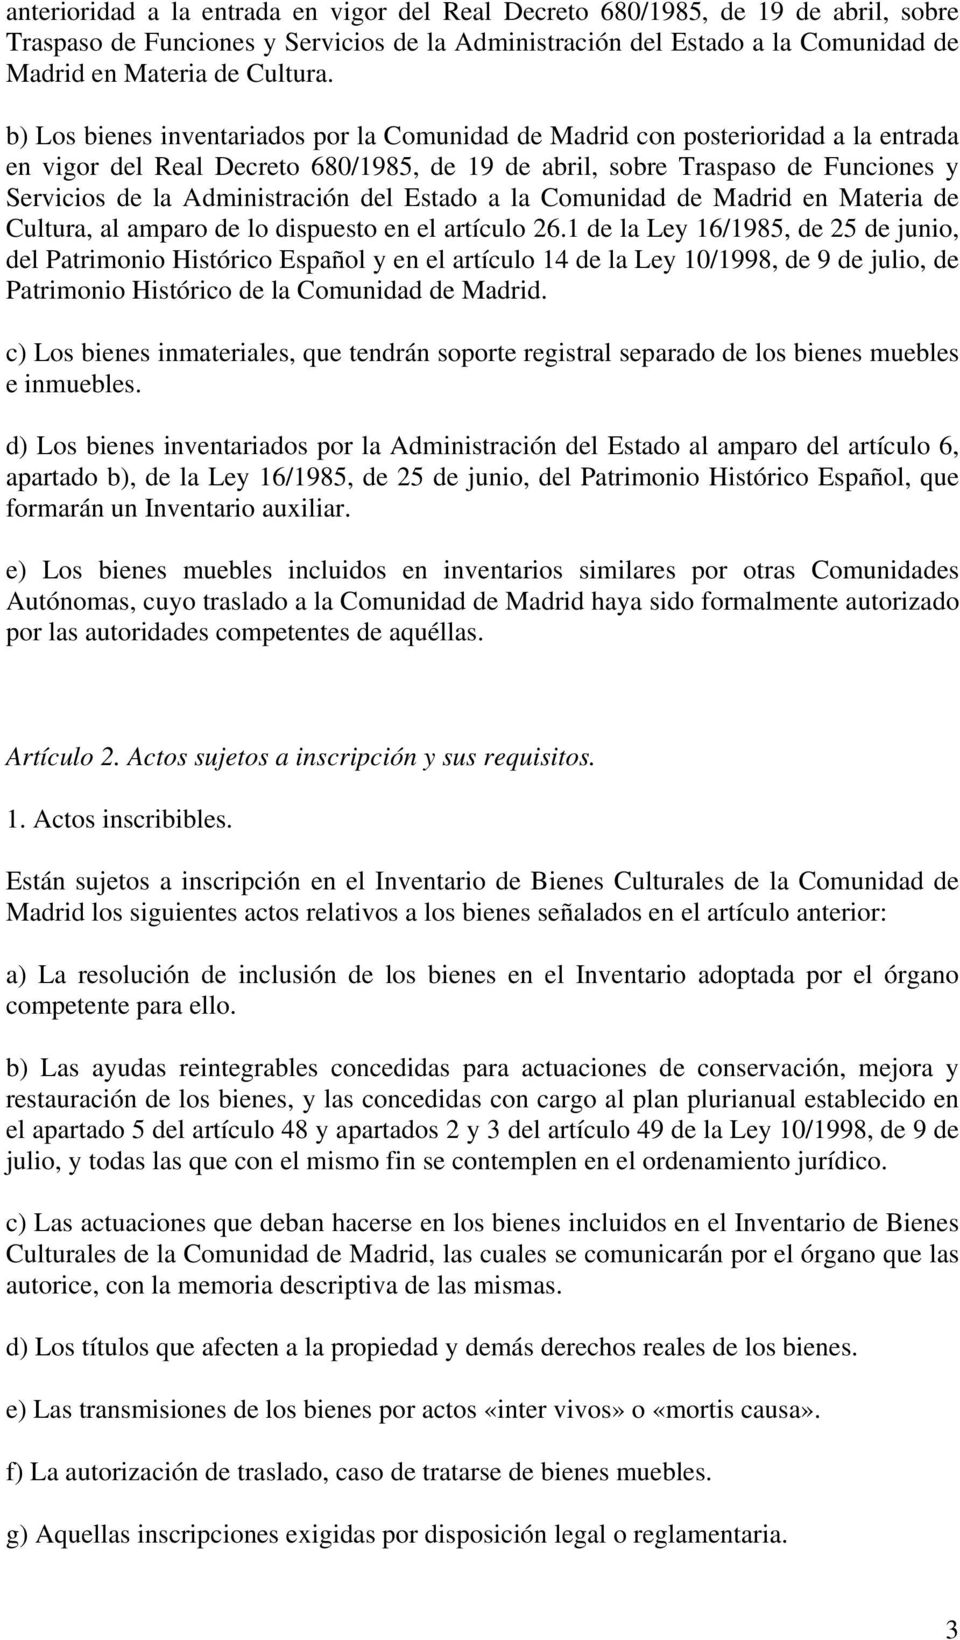 del Estado a la Comunidad de Madrid en Materia de Cultura, al amparo de lo dispuesto en el artículo 26.